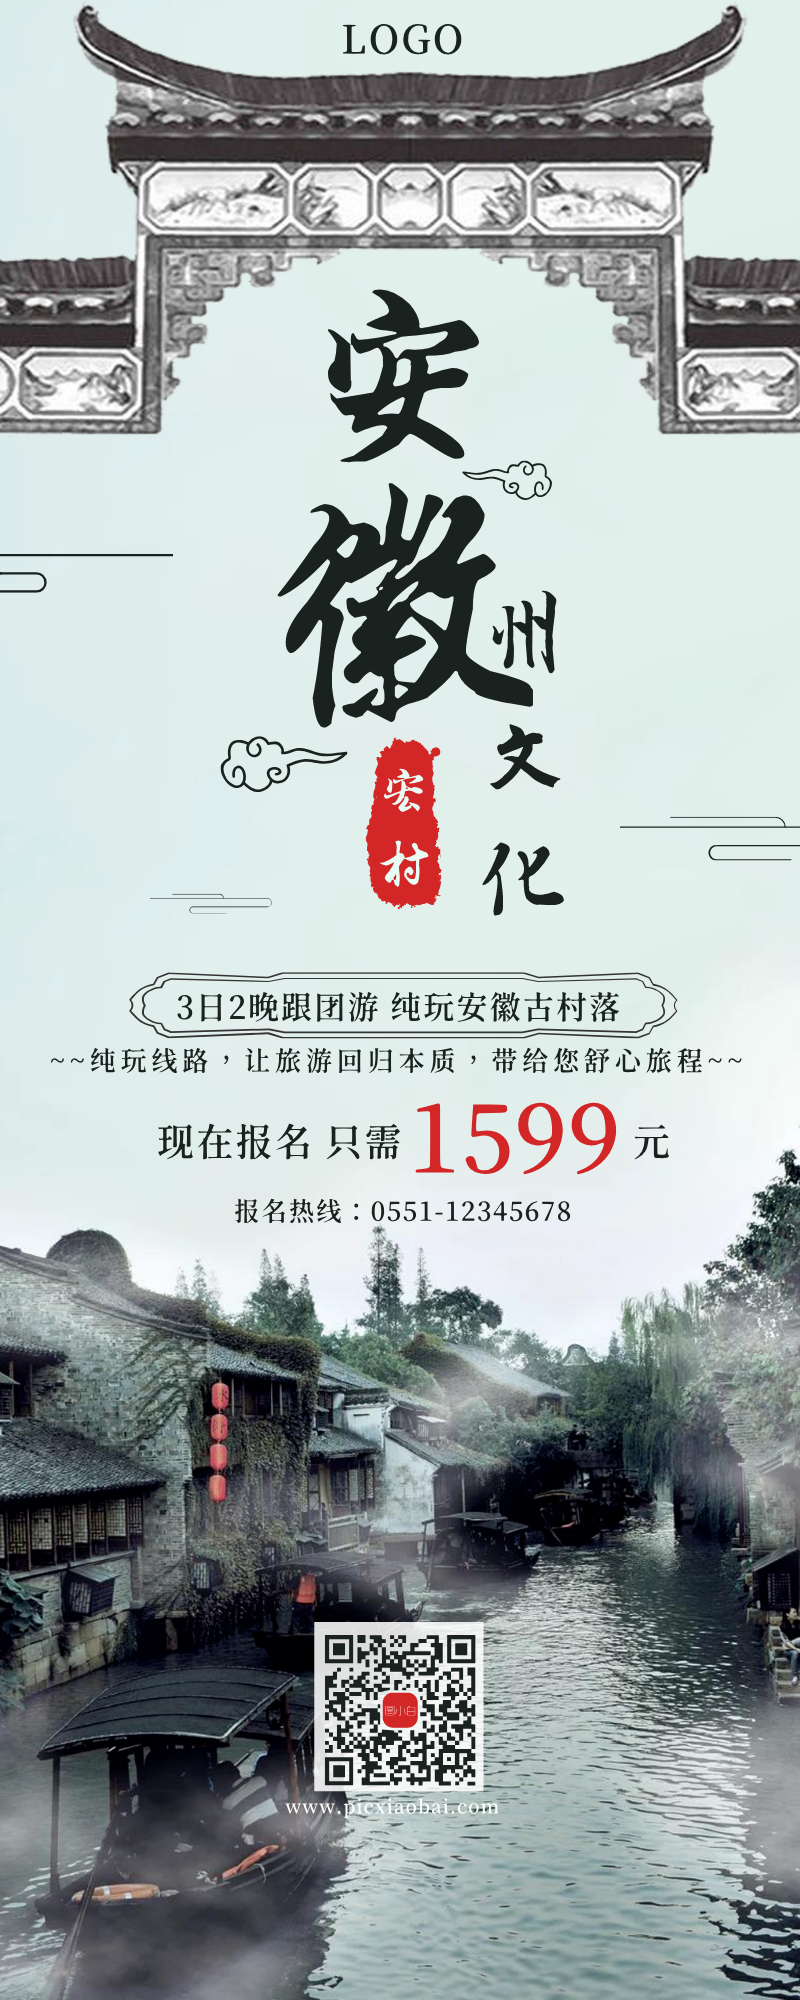 简约安徽文化旅游促销宣传易拉宝